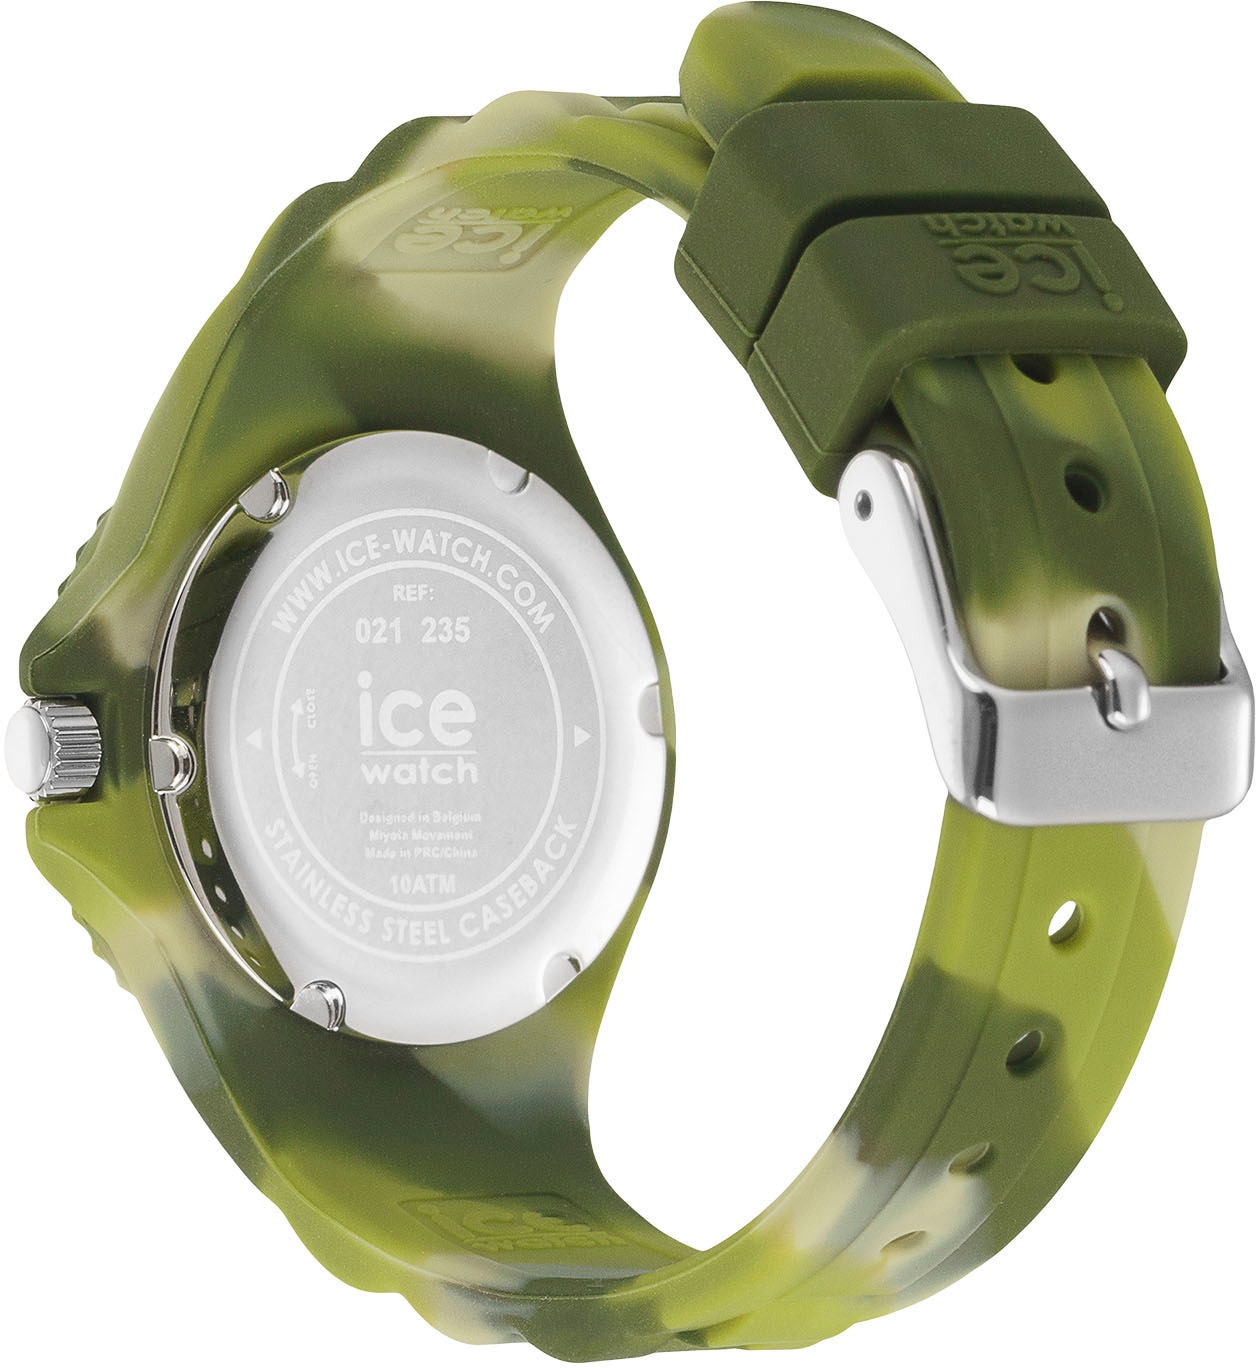 Extra-Small auch »ICE walking bestellen als tie | ice-watch dye Green and Geschenk 021235«, Quarzuhr 3H, - ideal shades - - I\'m